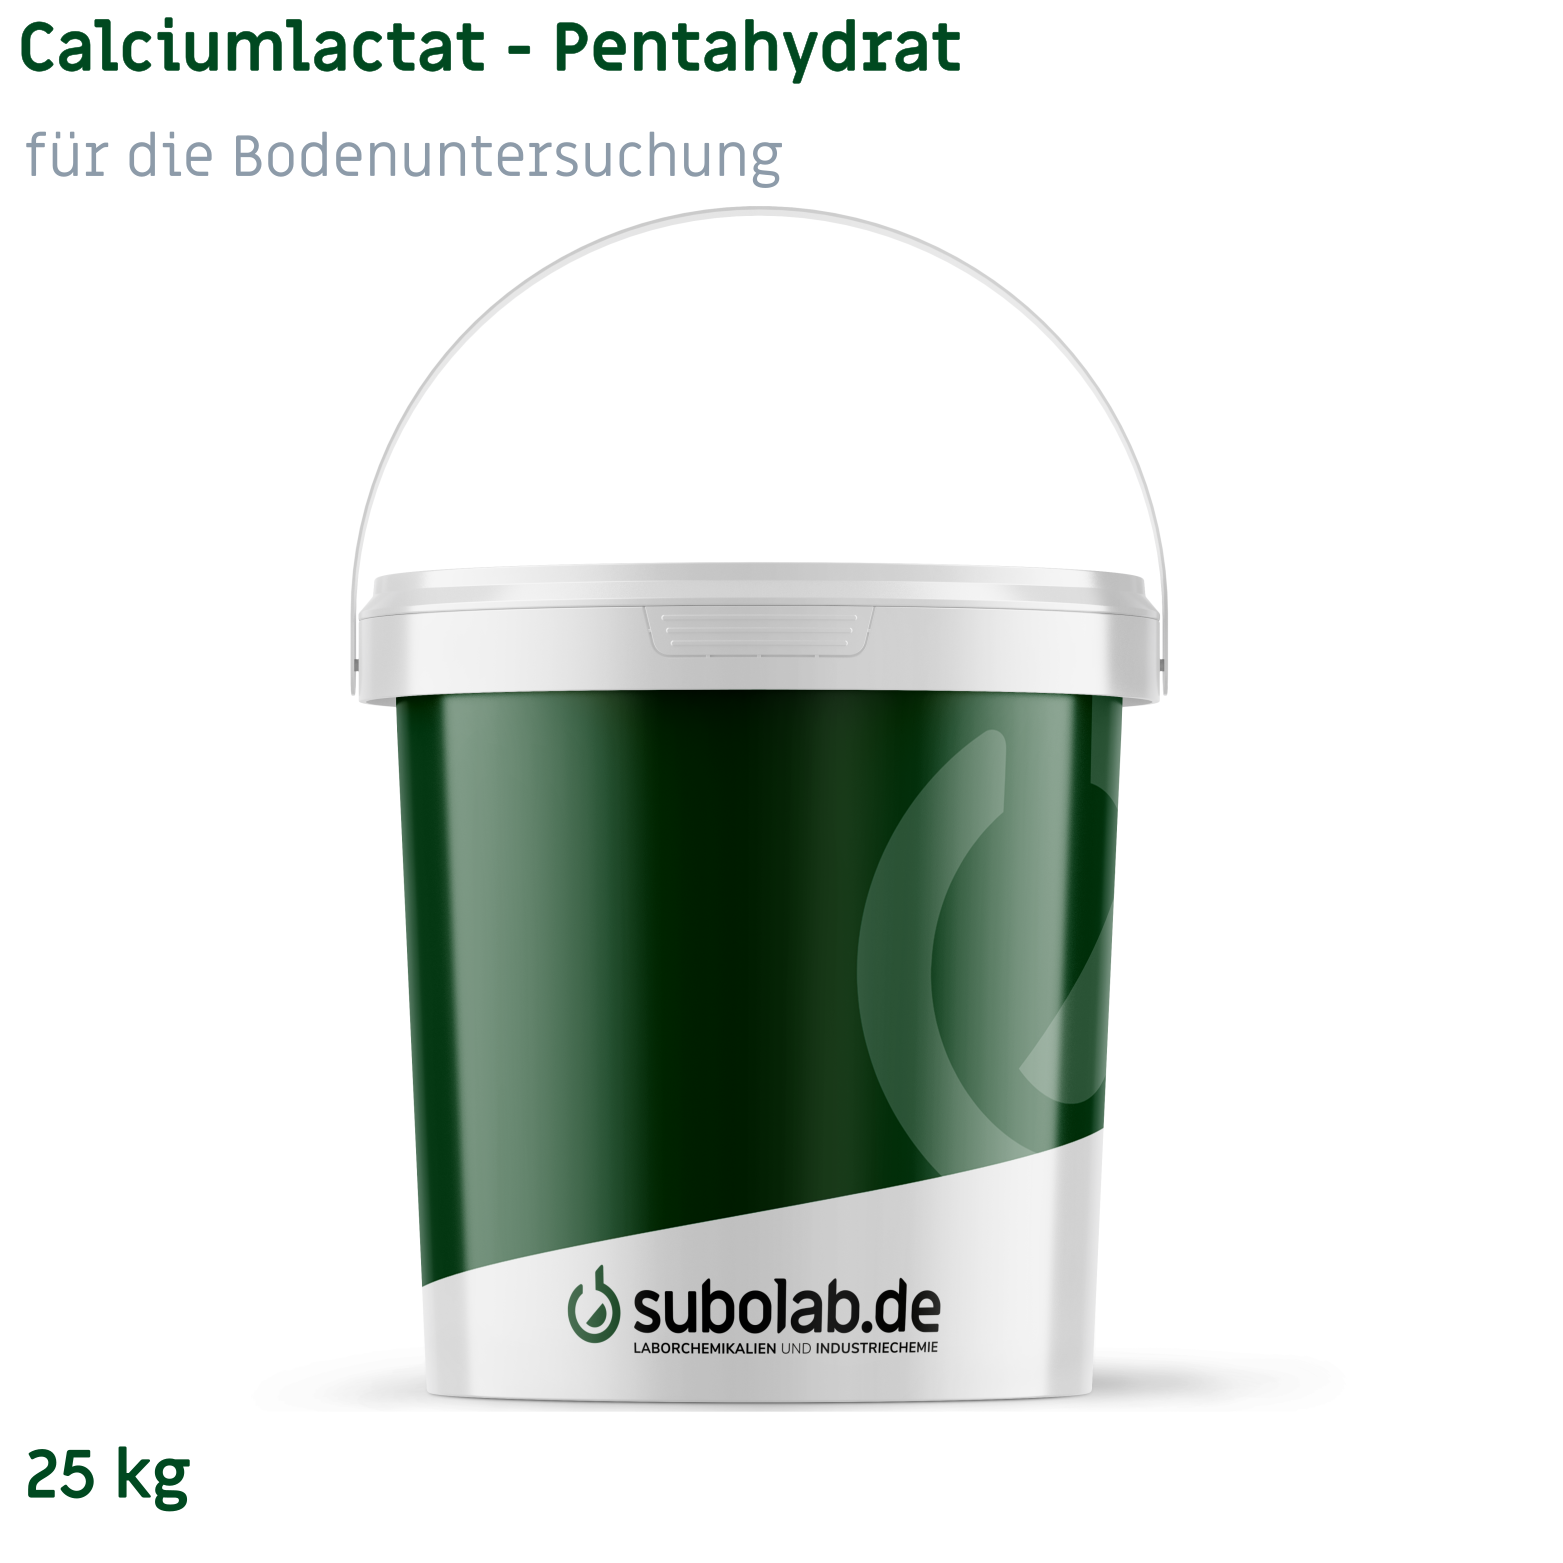 Bild von Calciumlactat - Pentahydrat für die Bodenuntersuchung (25 kg)